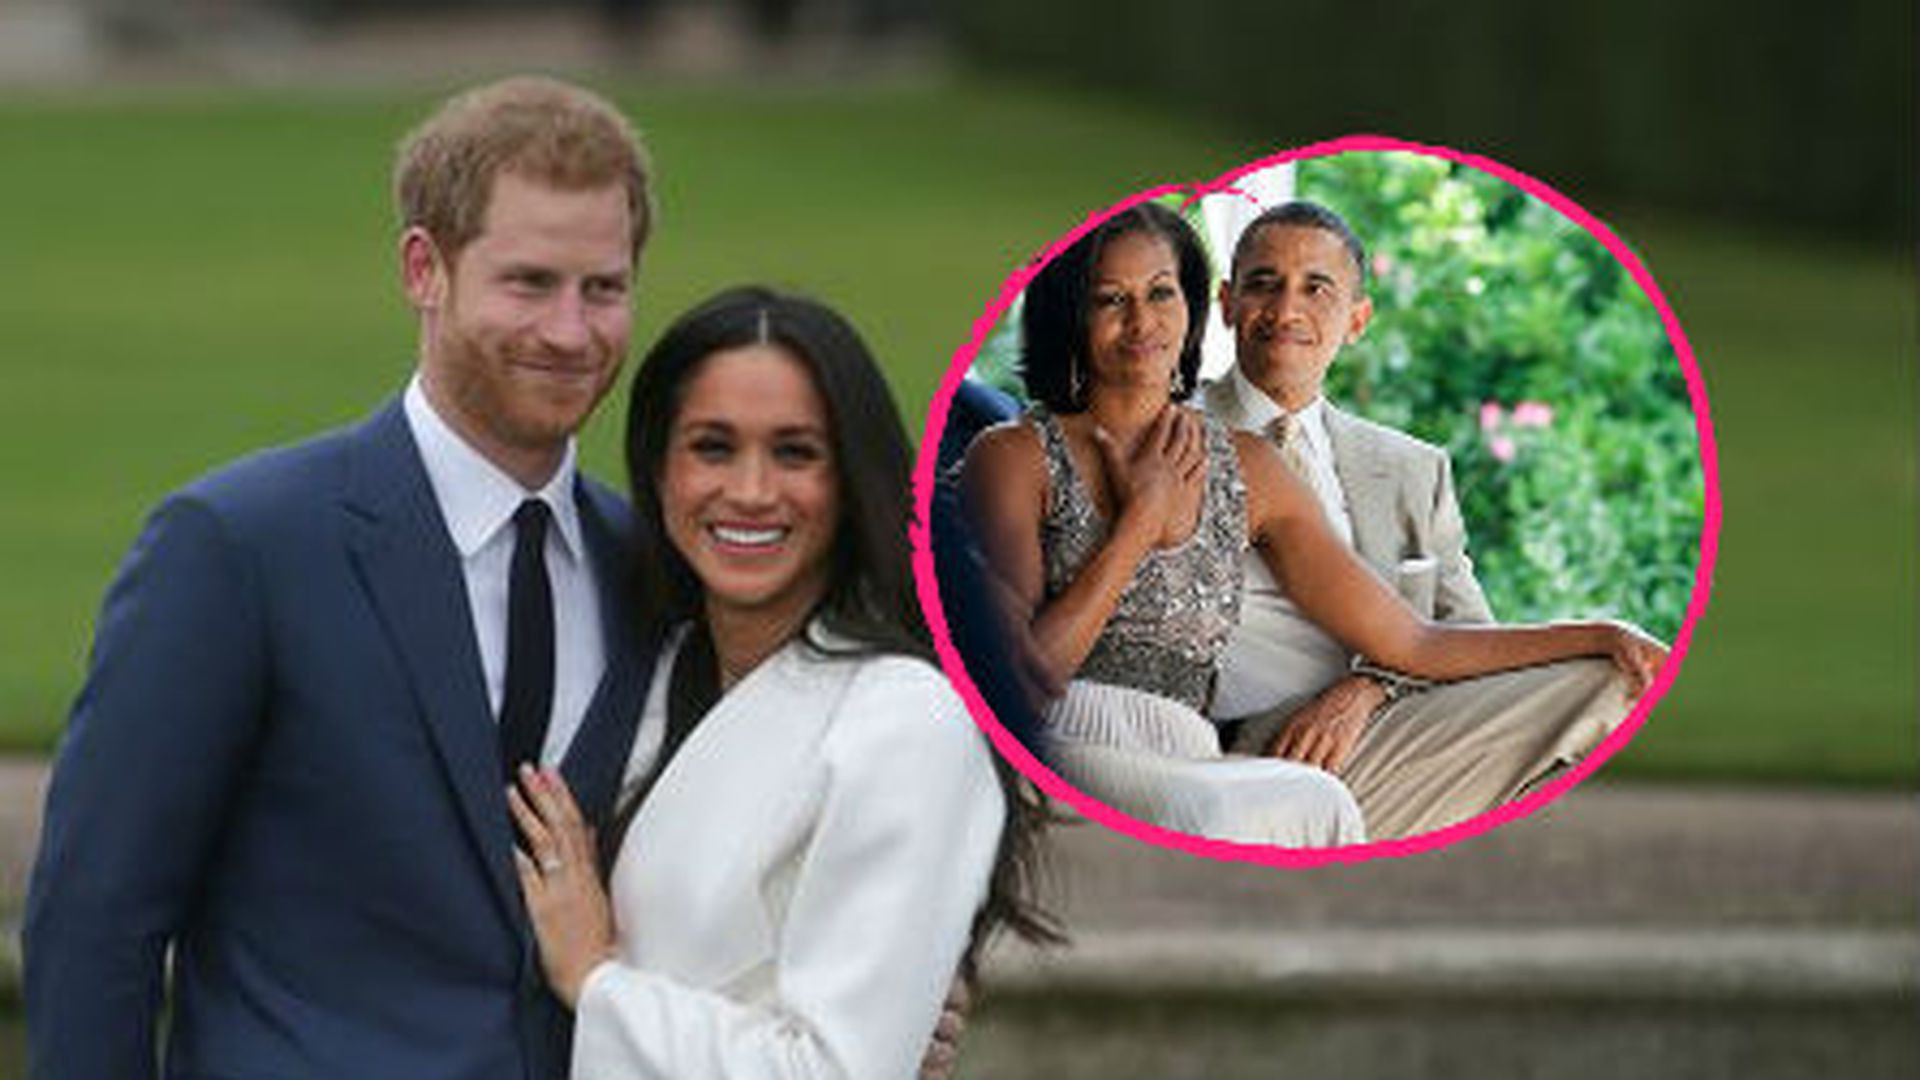 Fotos Hochzeit Harry
 Hochzeit von Prinz Harry & Meghan Die Obamas sollen